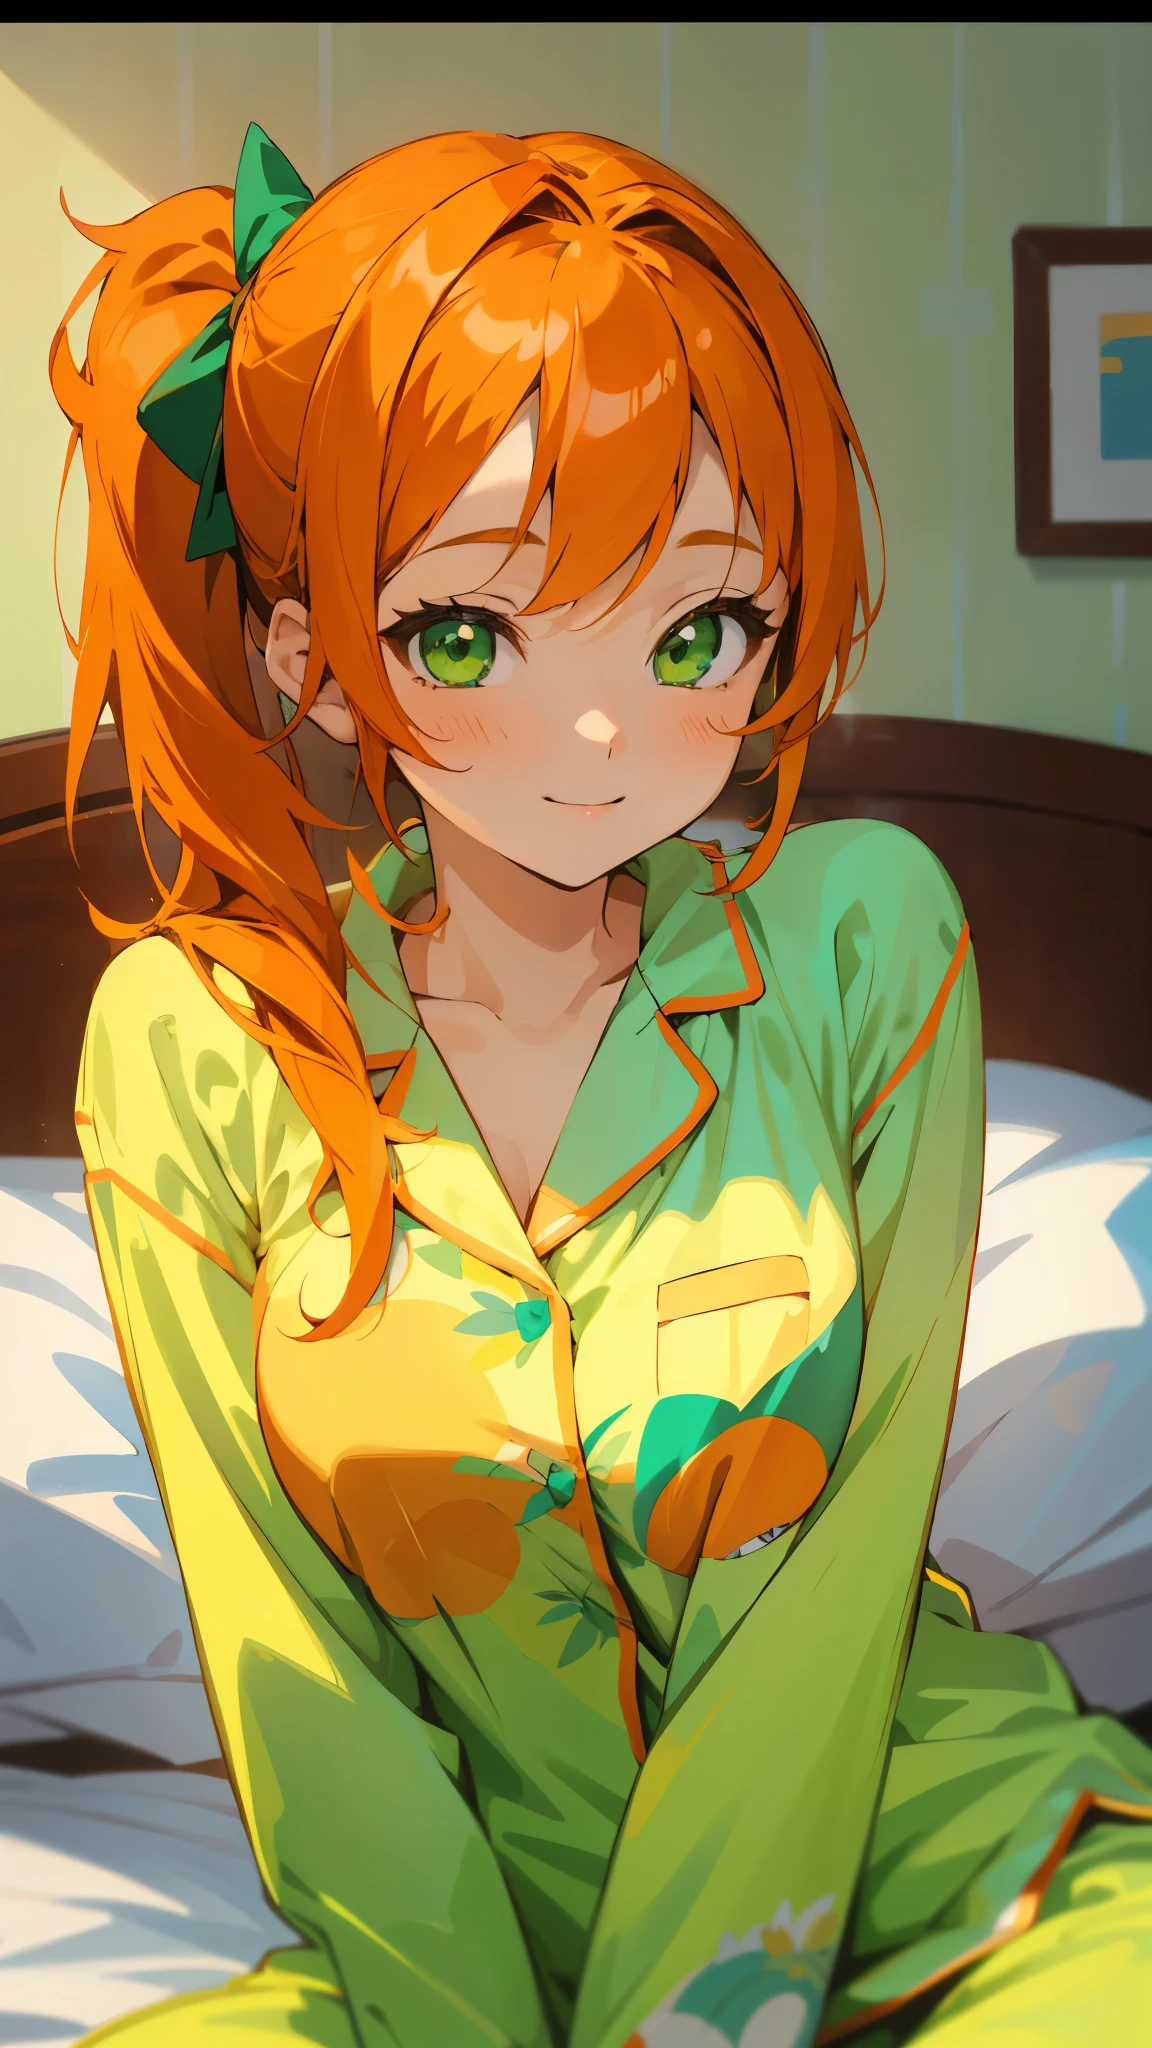 Chica de 18 años sentada en la cama、alone、Pintura estilo anime.、usando pijamas、pelo naranja、hermosos ojos verdes、cola de caballo lateral、sonrisa、sonrisa、La suave textura del pijama、primer plano de la parte superior del cuerpo、Colores naranja y verde、Desenfoque de fondo、Profundidad del borde dibujado